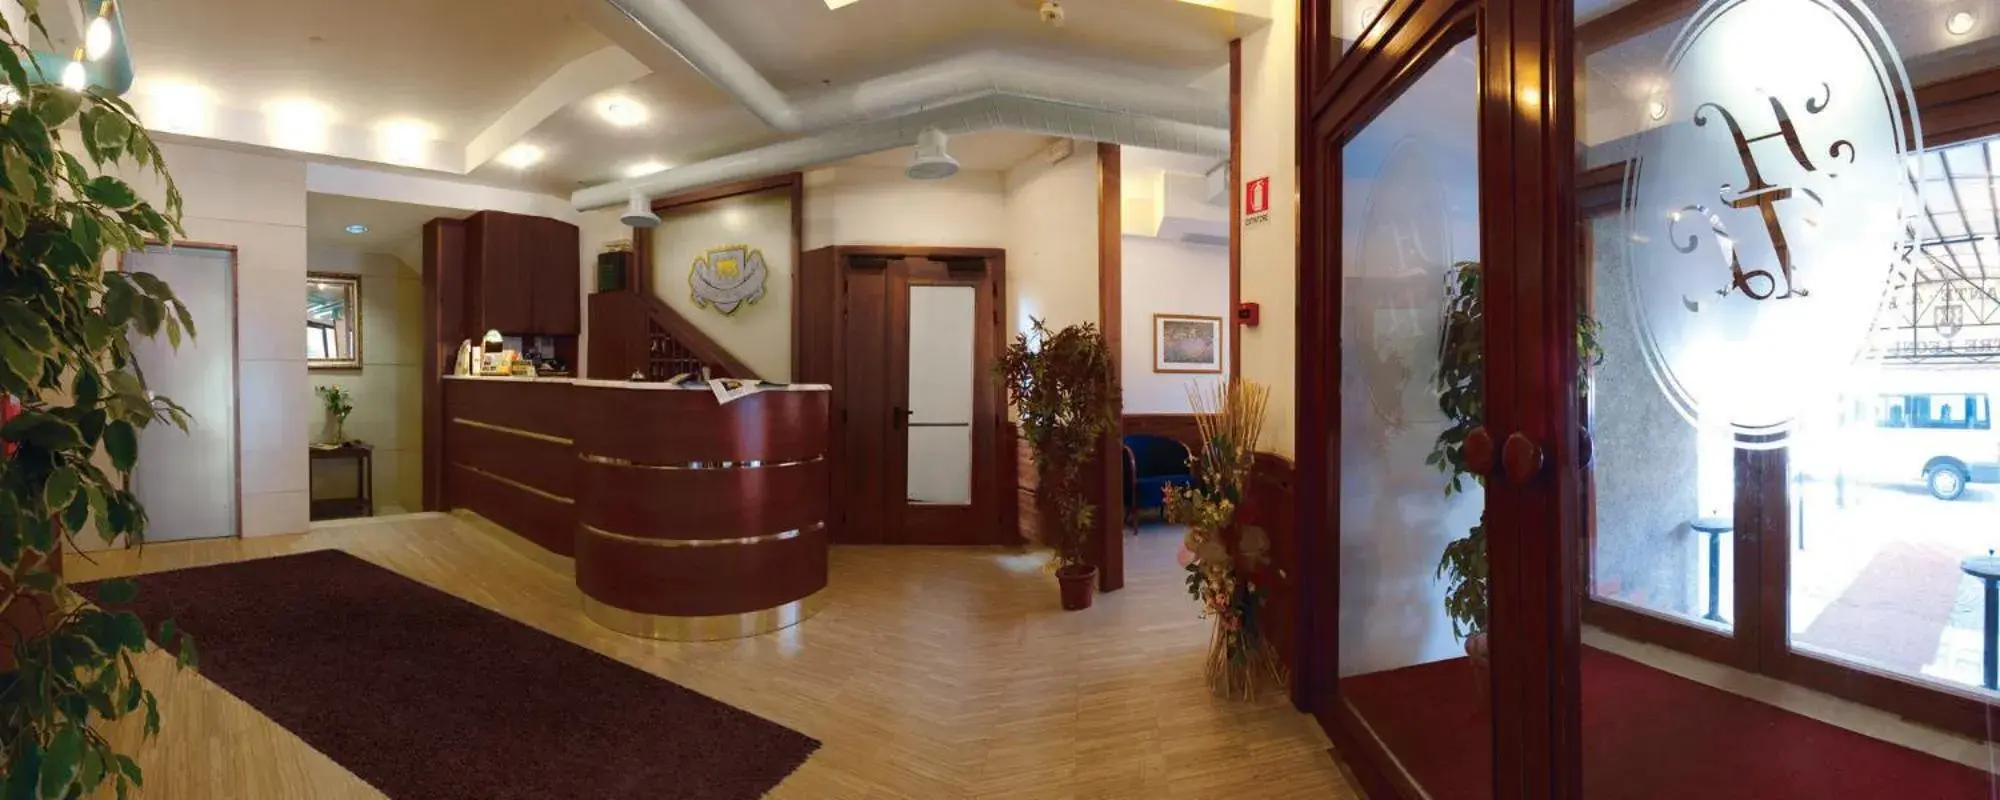 Lobby/Reception in Hotel Ristorante Tre Leoni